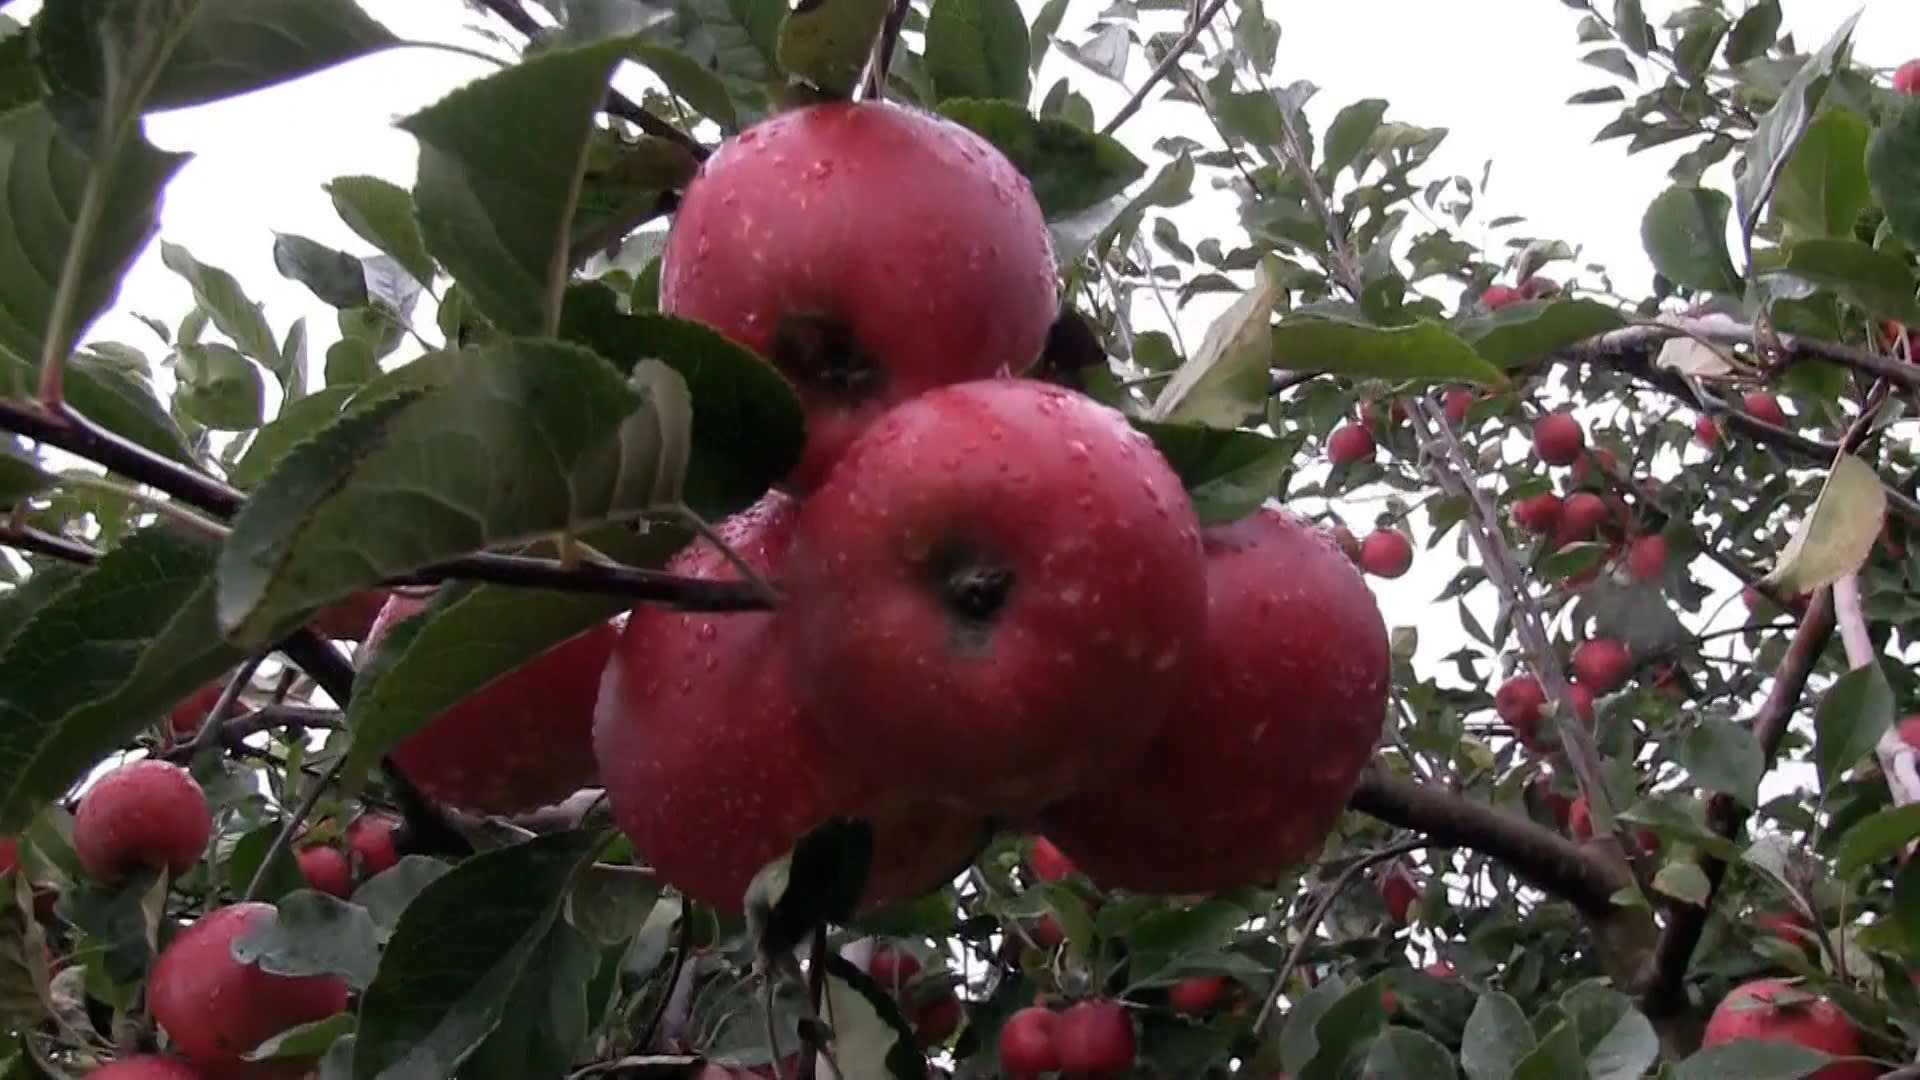 Ovocnáři zuří. Obchodní řetězce vykupují kilo jablek v průměru za 15 korun, ale prodají ho i za čtyřnásobek.